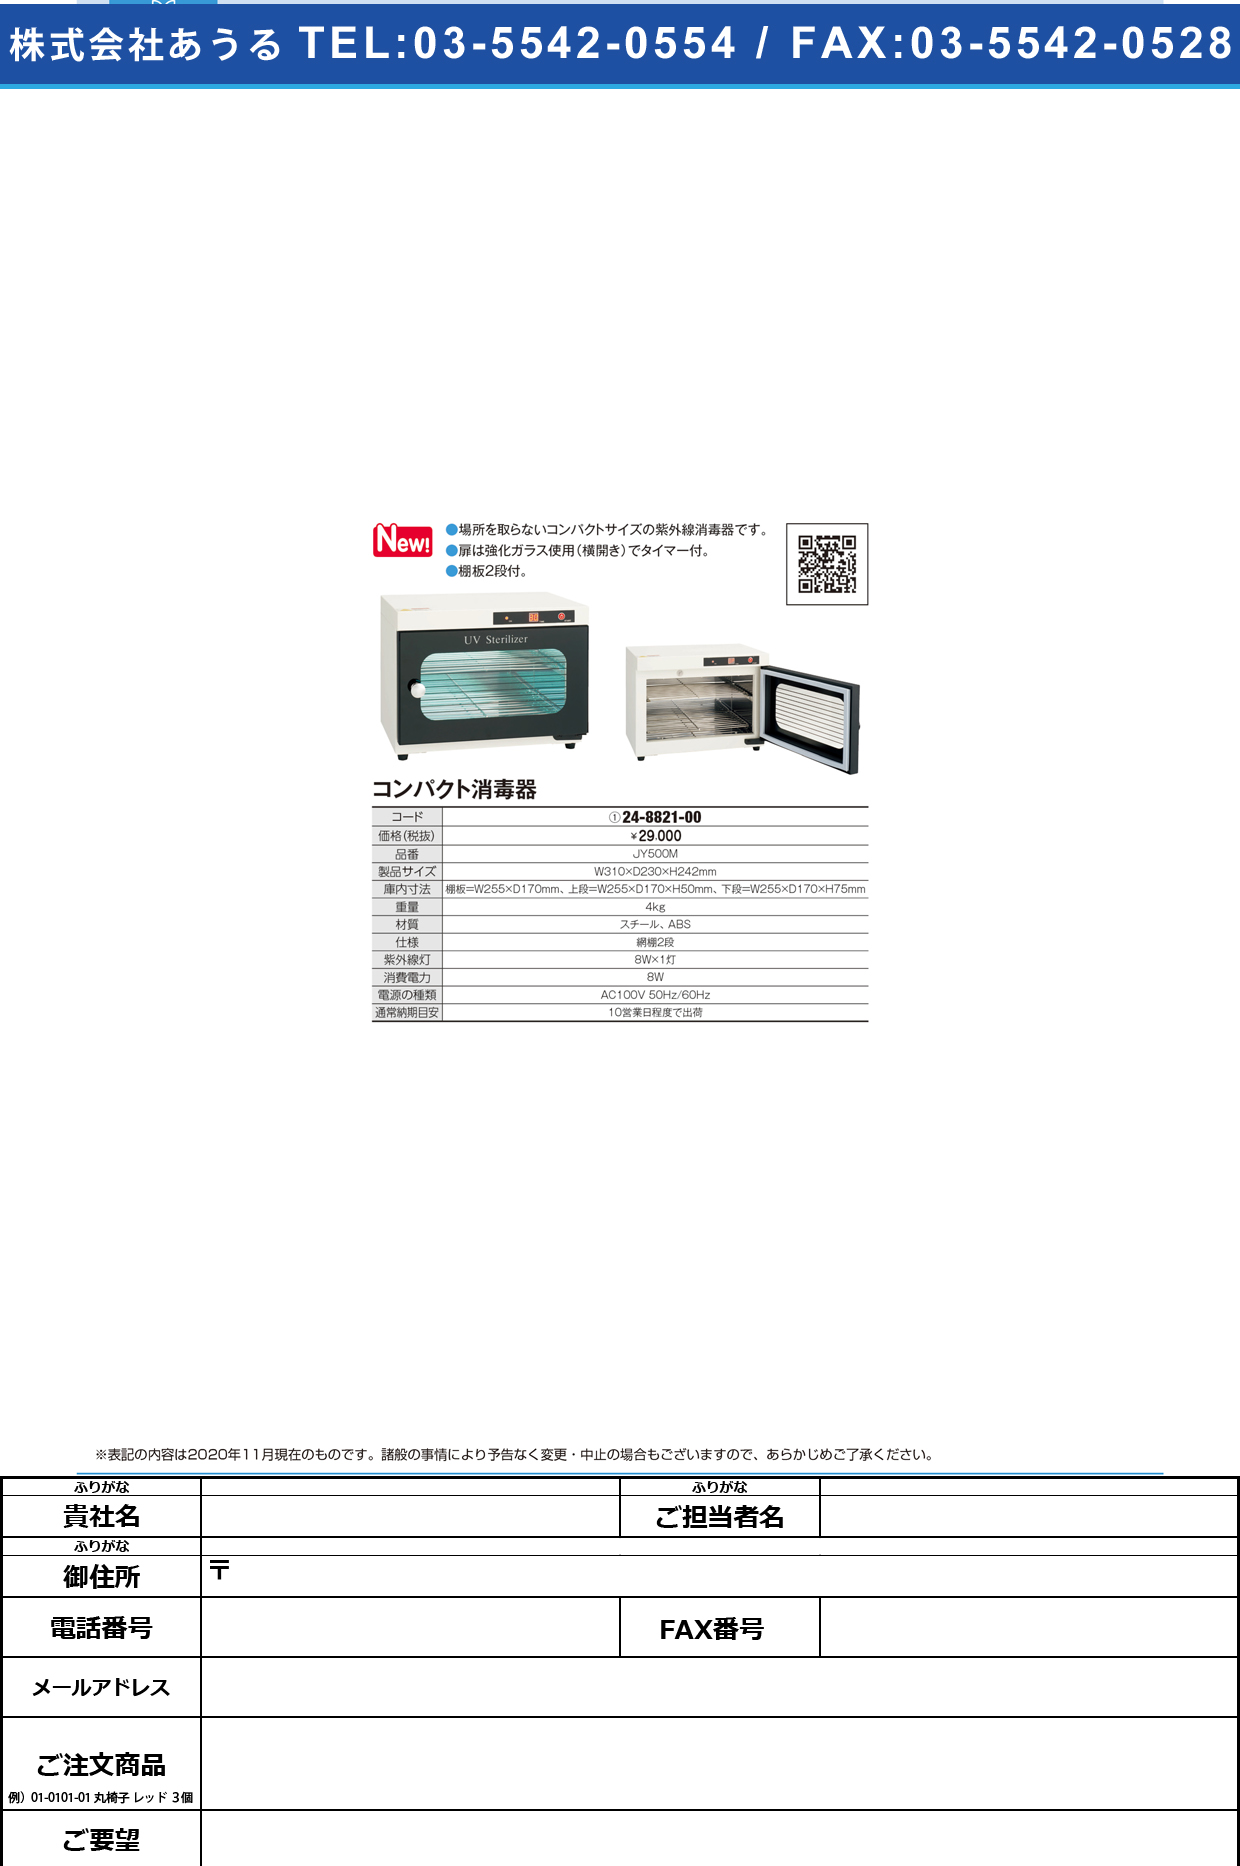 コンパクト消毒器 JY-500M(70091)JY-500M(70091)(24-8821-00)【西村製作所】(販売単位:1)